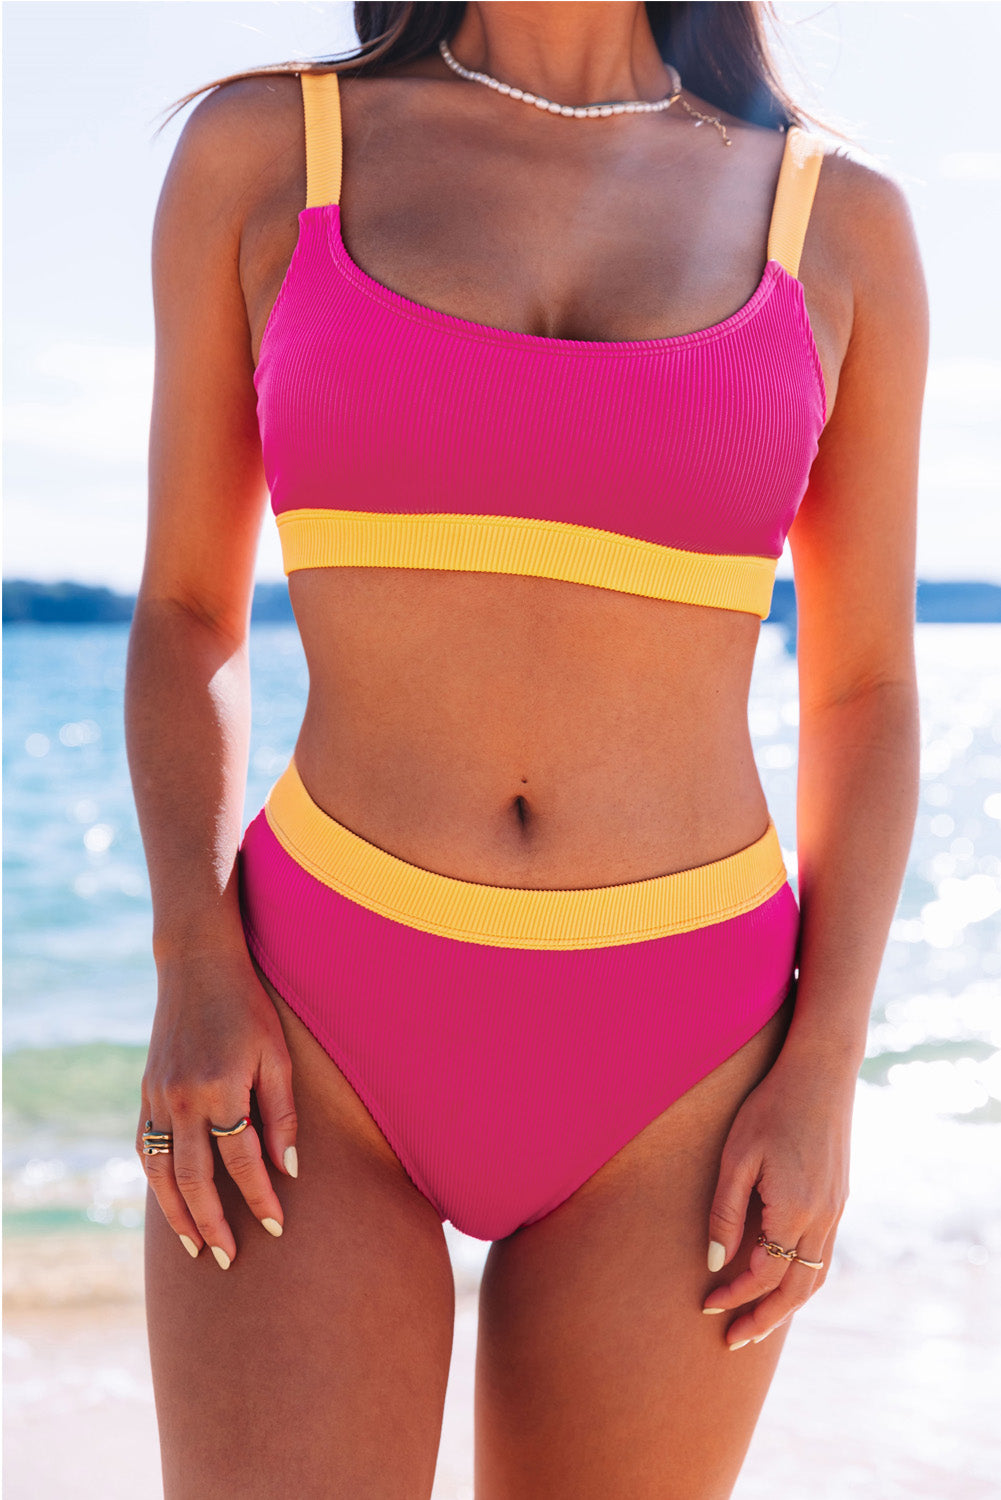 Rosafarbene, gerippte Bikini-Badebekleidung mit Blockfarben